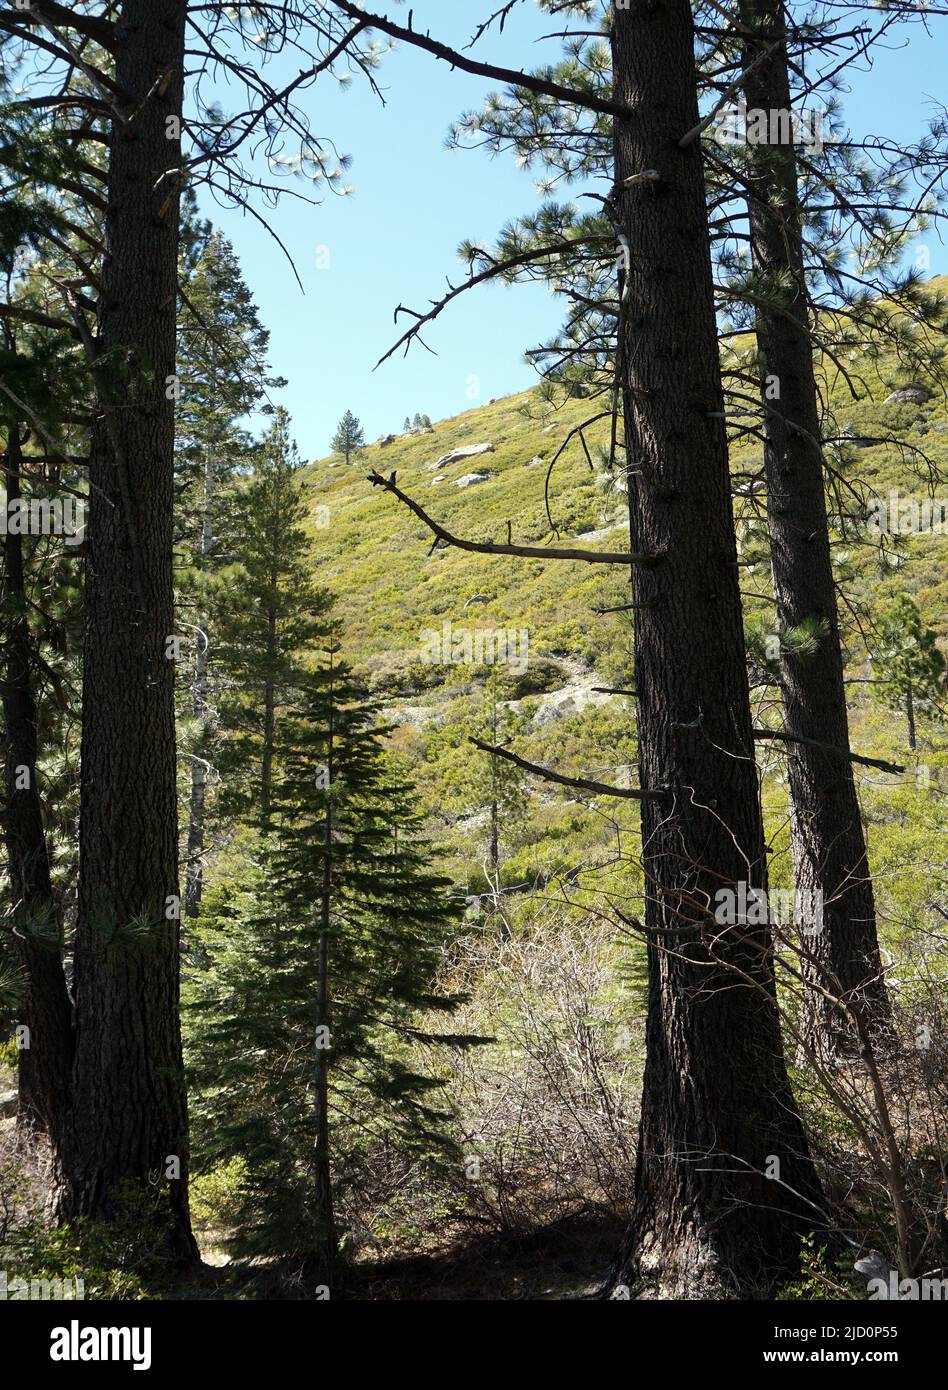 The Sierra Nevada Mountains, California Stock Photo